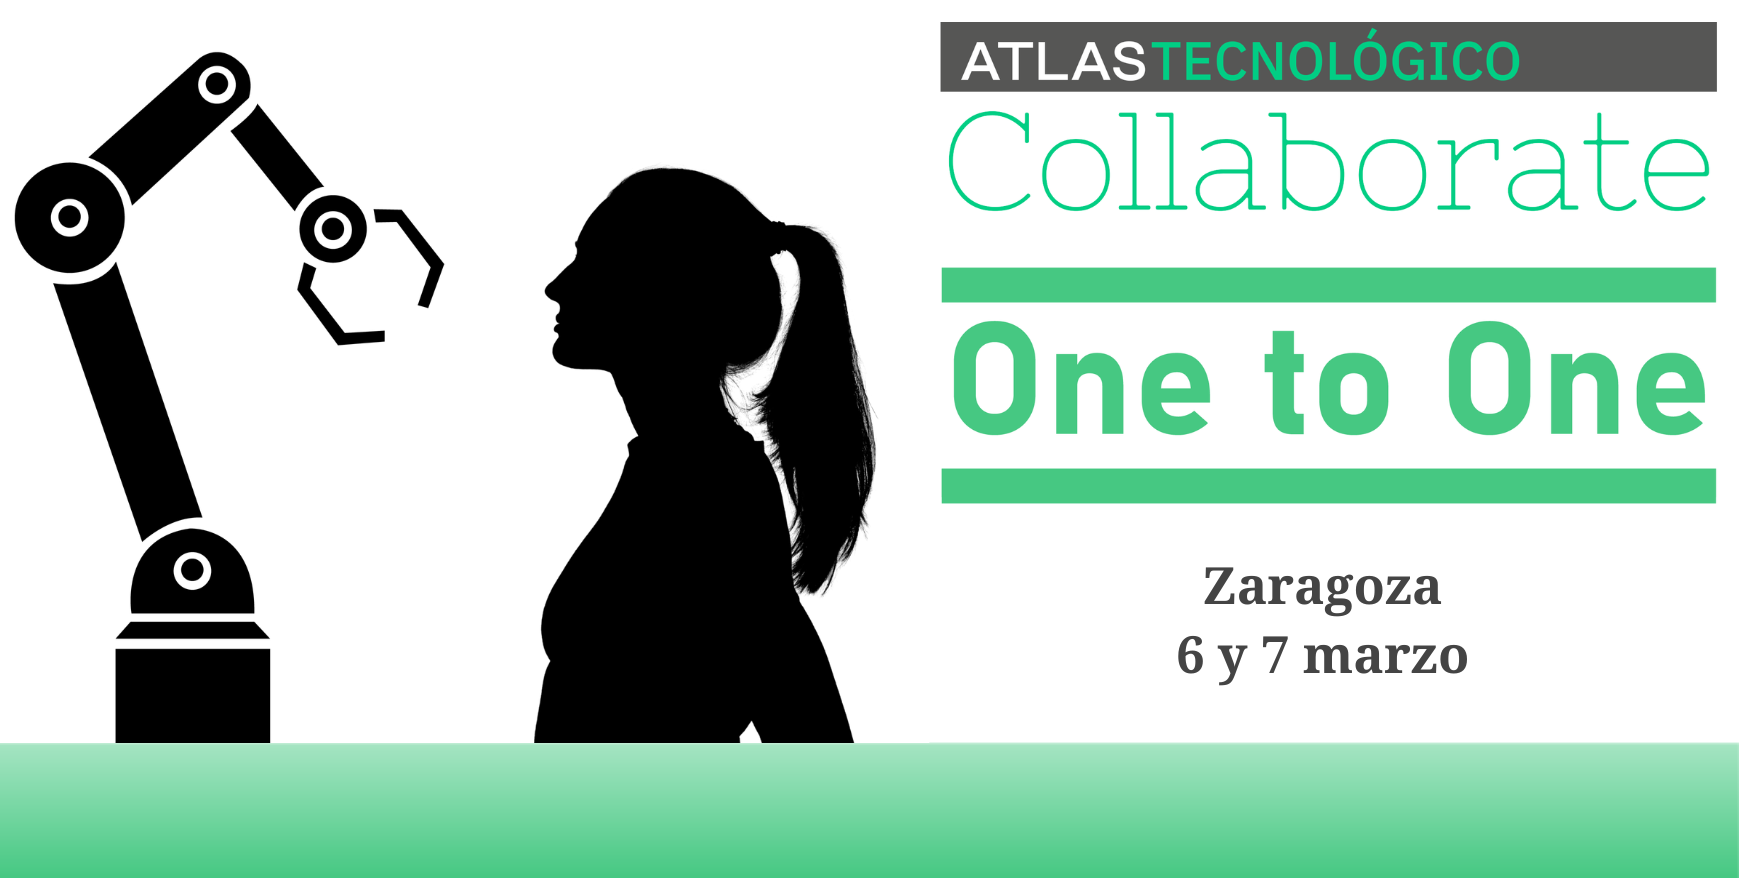 Vuelven las reuniones One to One al Collaborate Zaragoza: conoce a tu próximo partner tecnológico